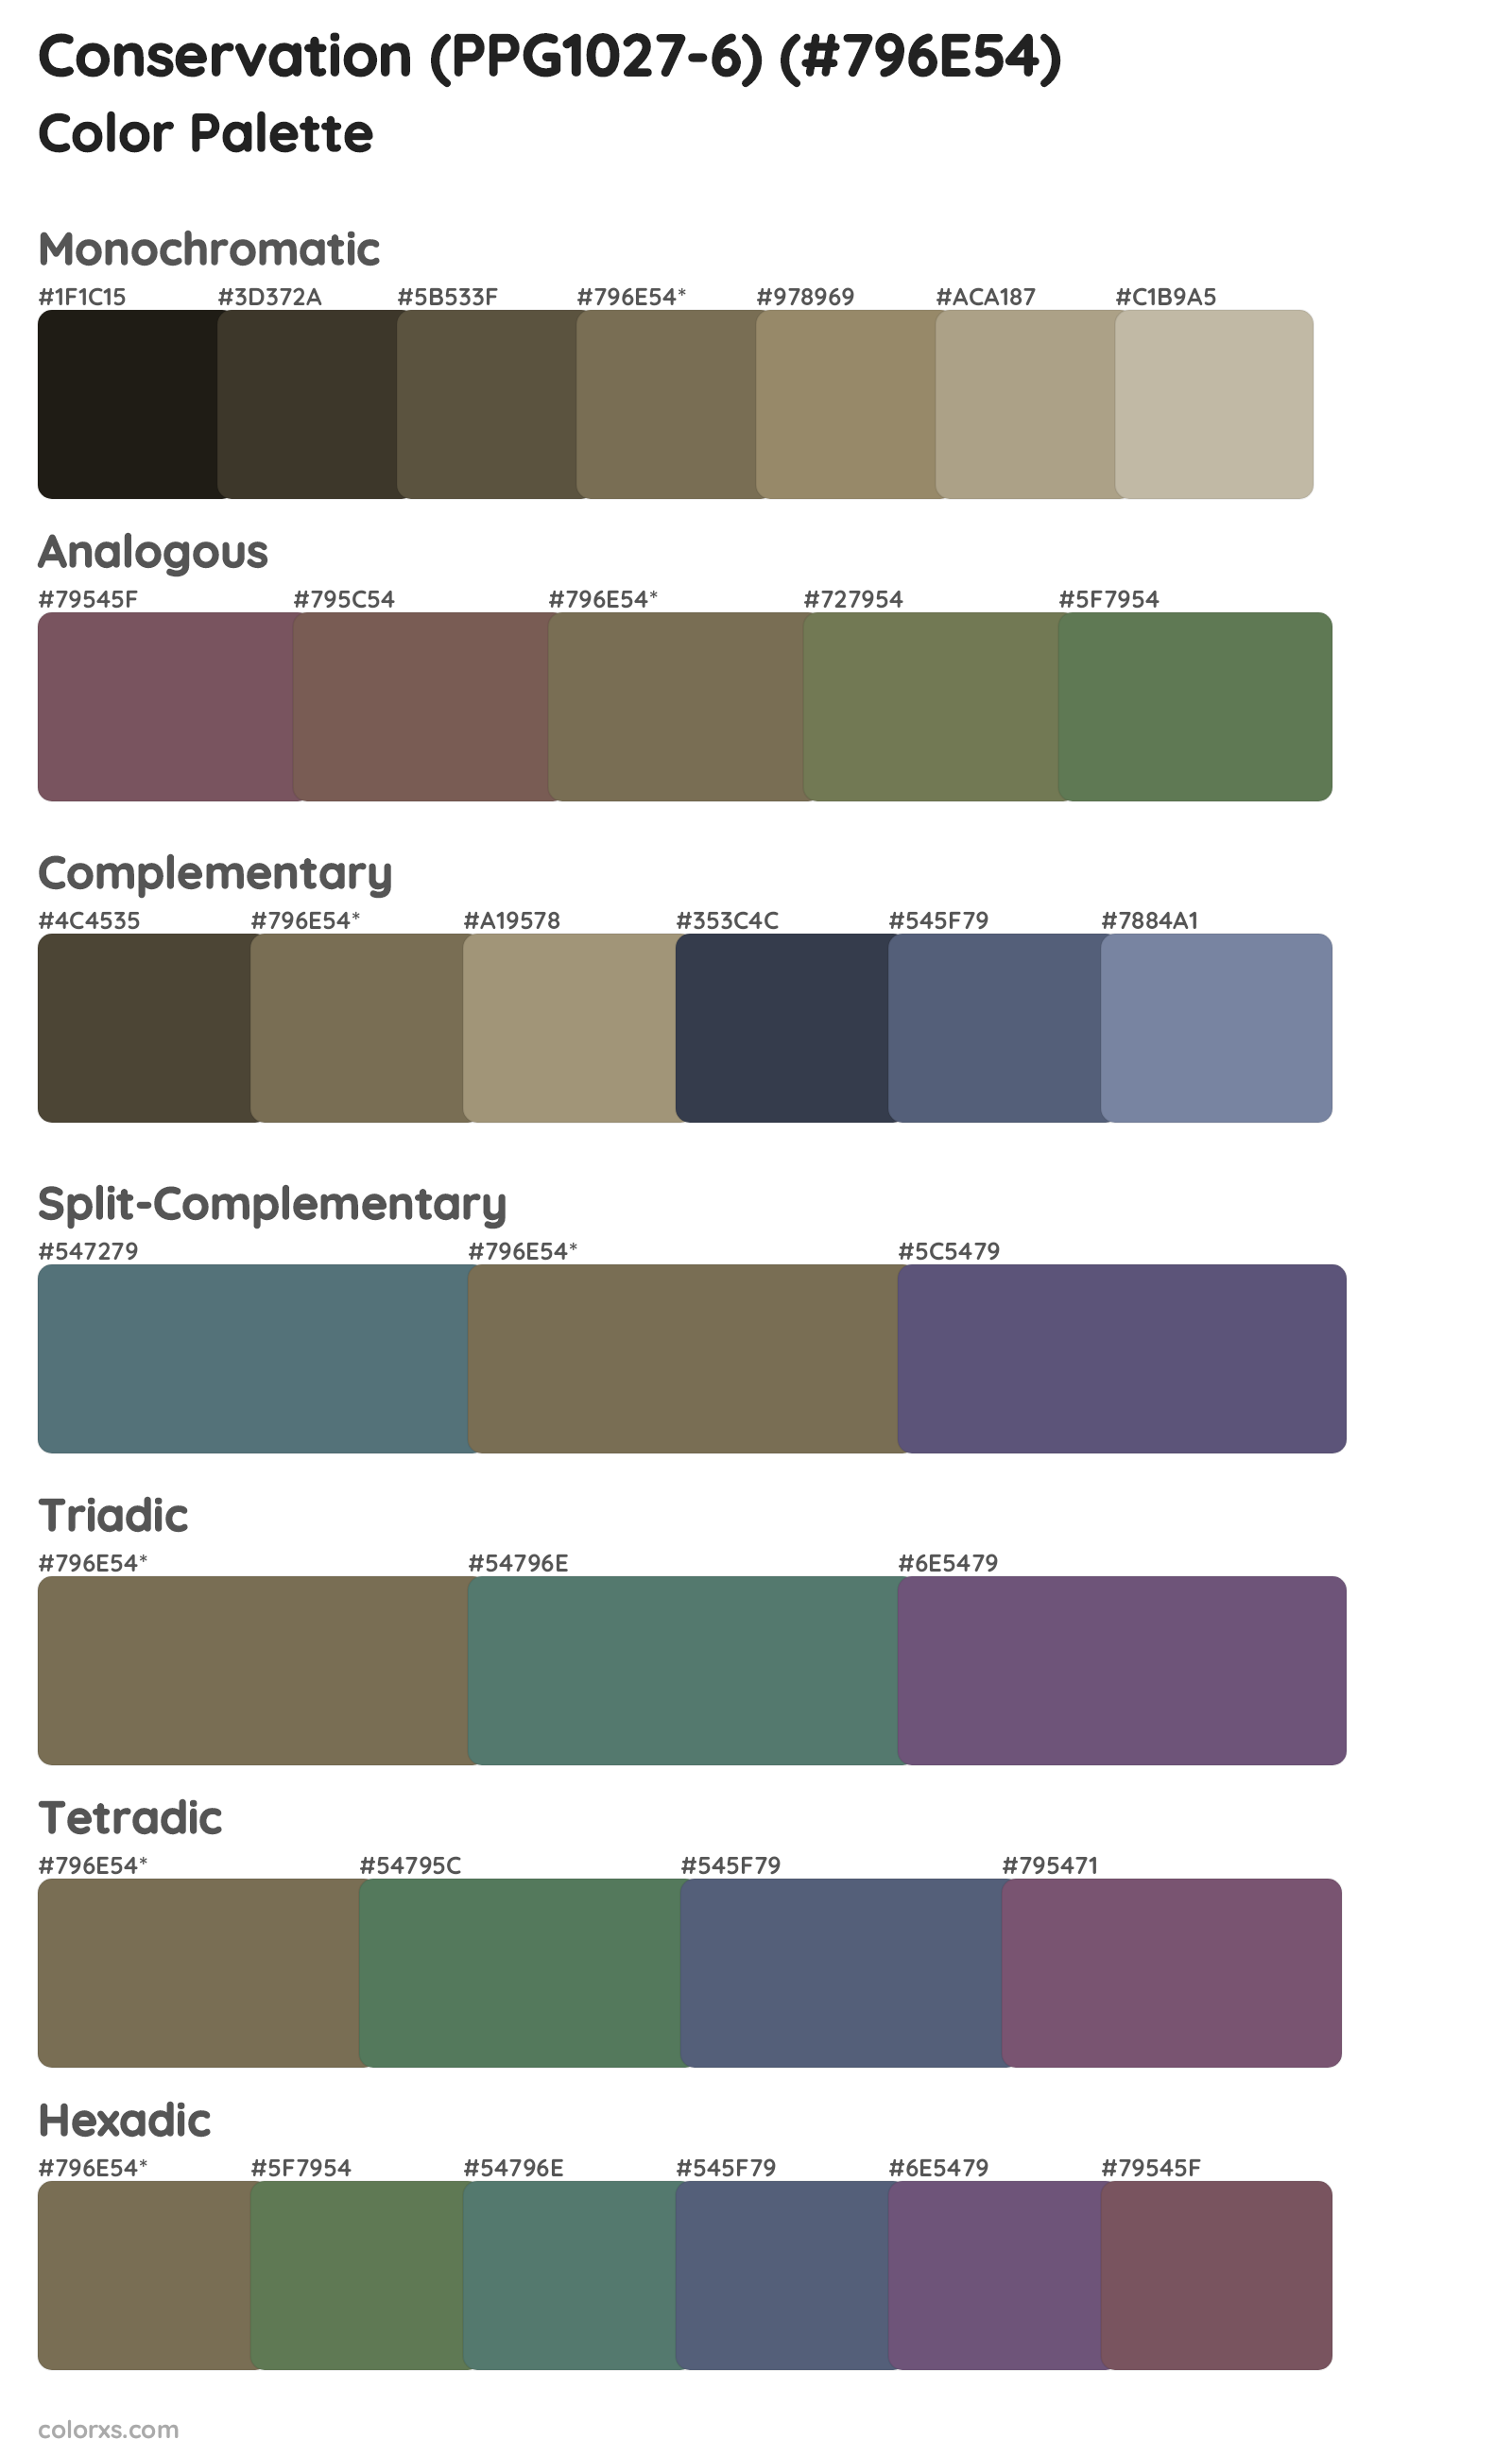 Conservation (PPG1027-6) Color Scheme Palettes